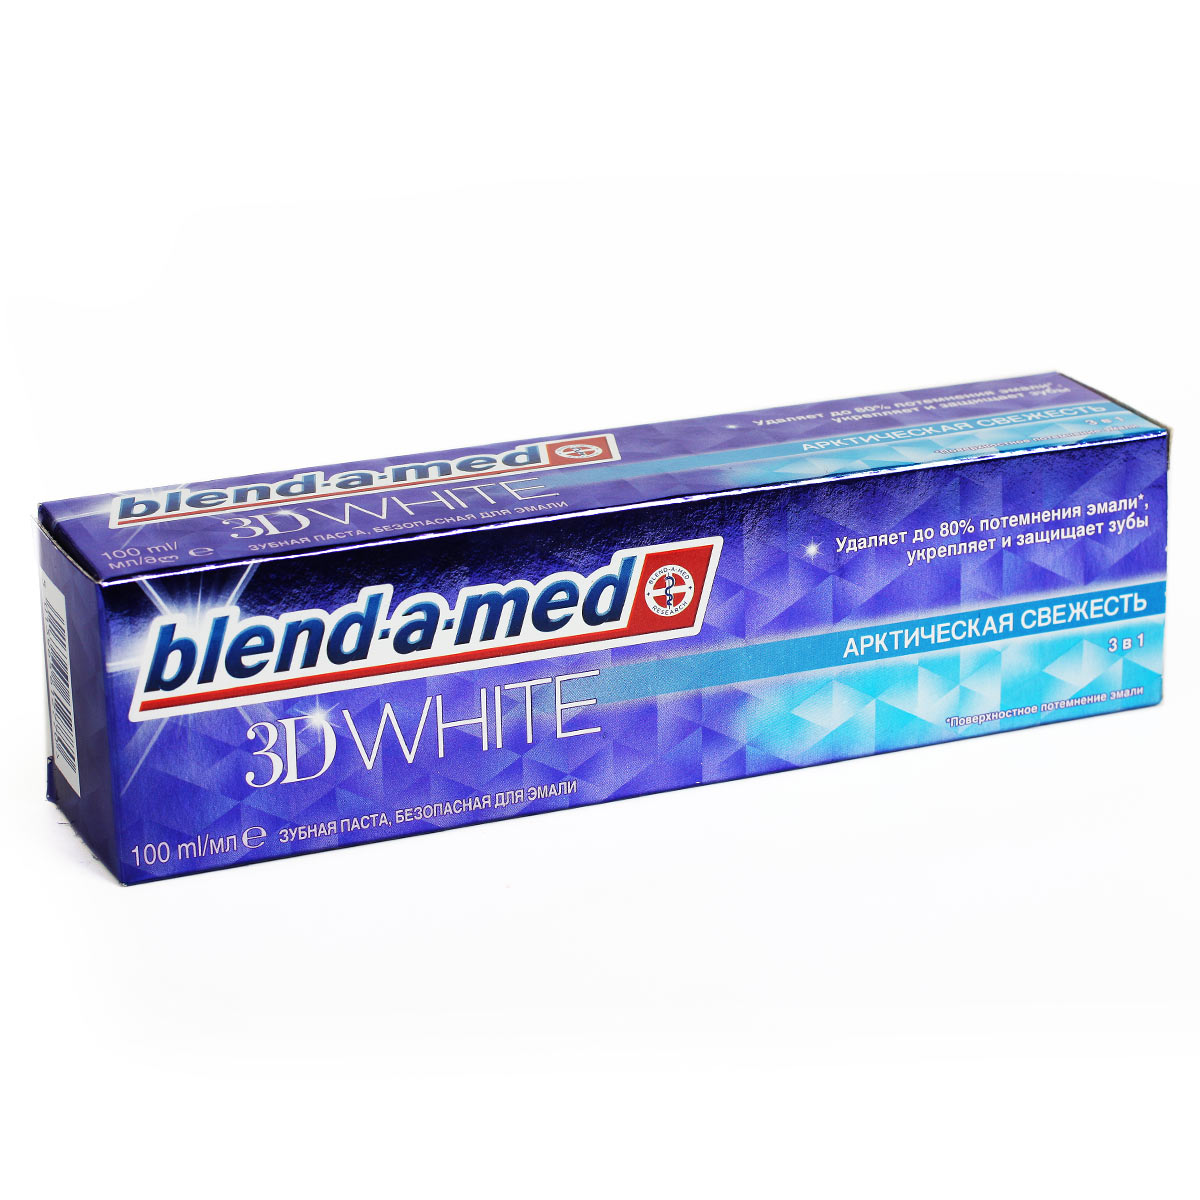 Blend-a-med 3D WHITE Арктическая свежесть зубная паста 100мл